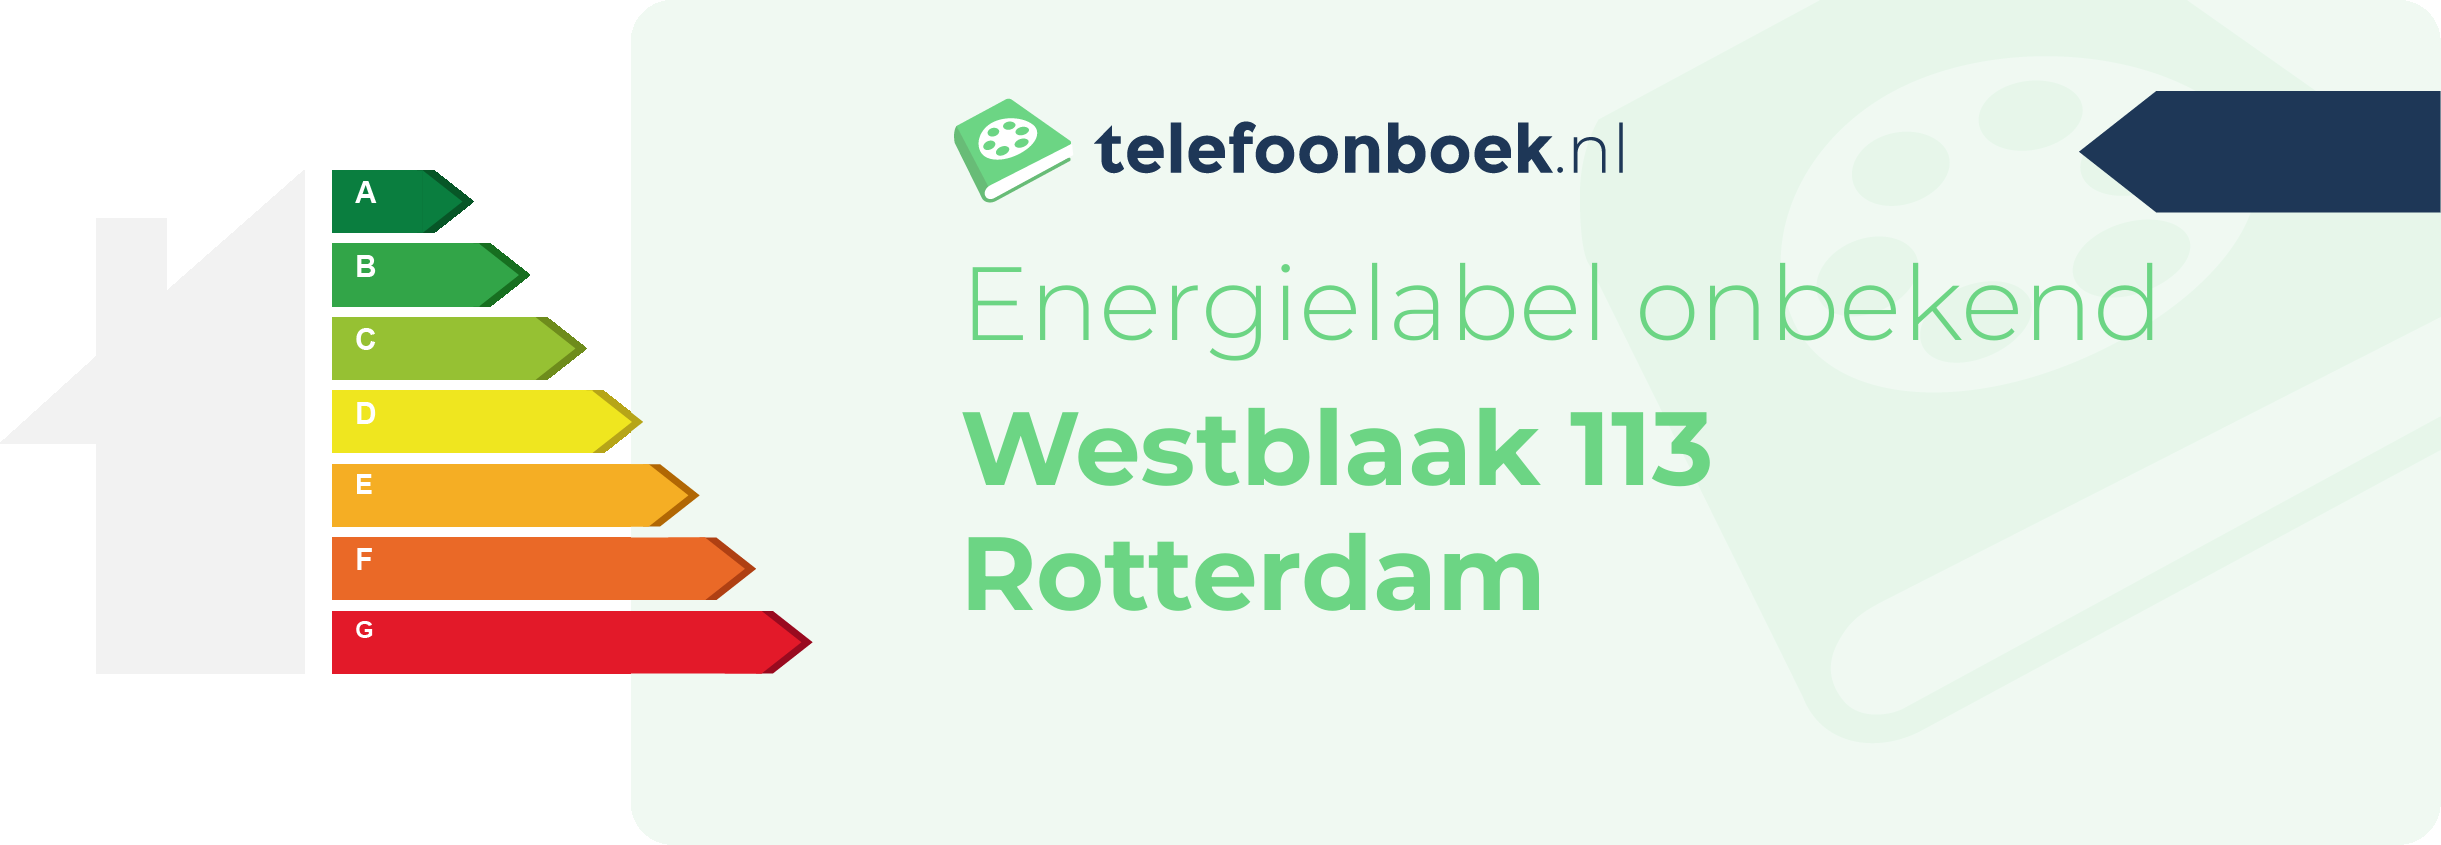 Energielabel Westblaak 113 Rotterdam